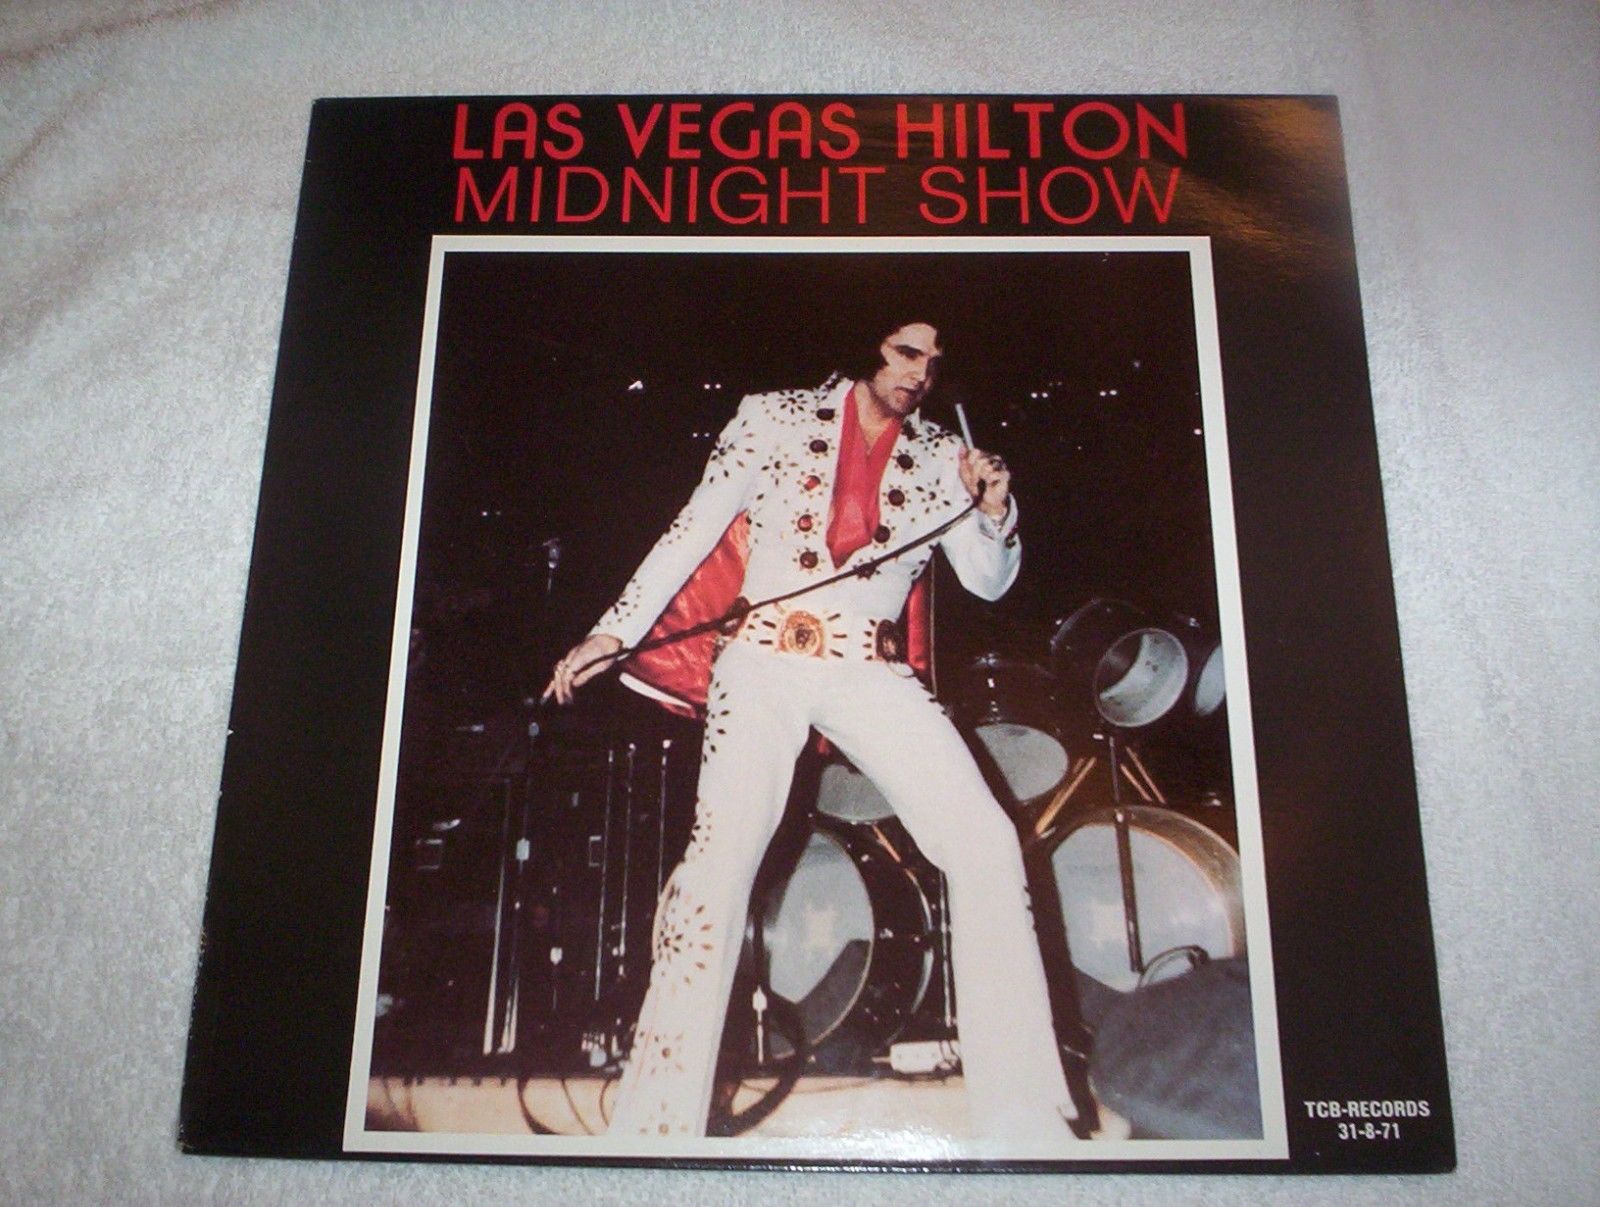 Popsike Com Elvis Presley Las Vegas Hilton Midnight Show Tcb 31 8 71 Auction Details